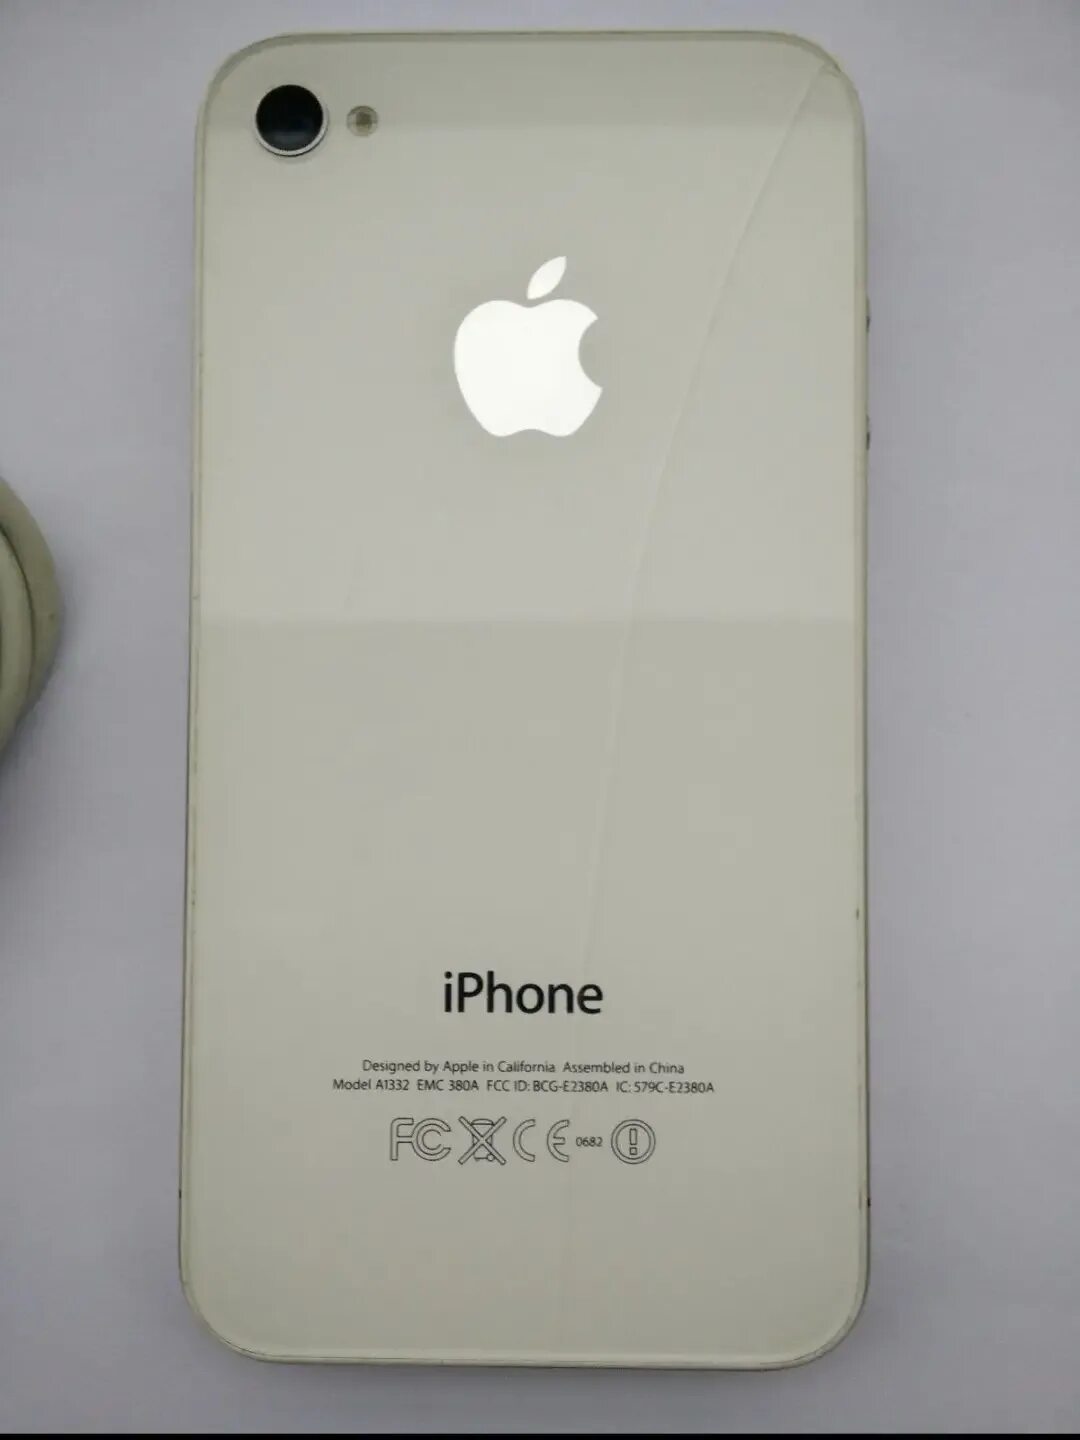 Iphone a1332 EMC 380a. Айфон model i332 EMC 380a FCC ID BCG. Айфон model a1221. Модель а1332.